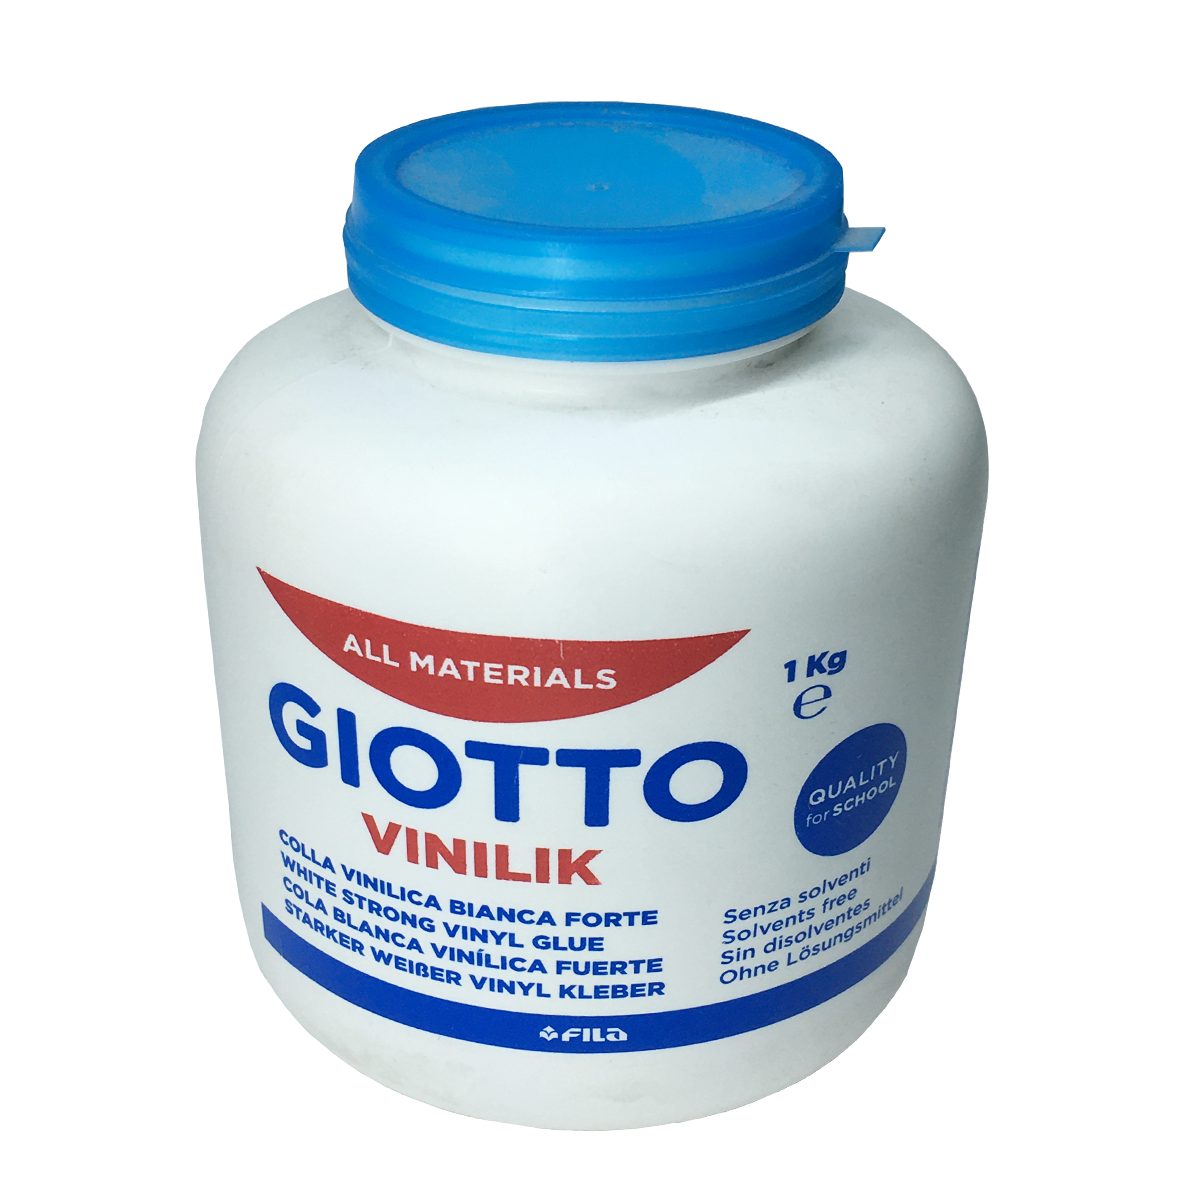 Giotto Vinilik White Glue 1 Kg